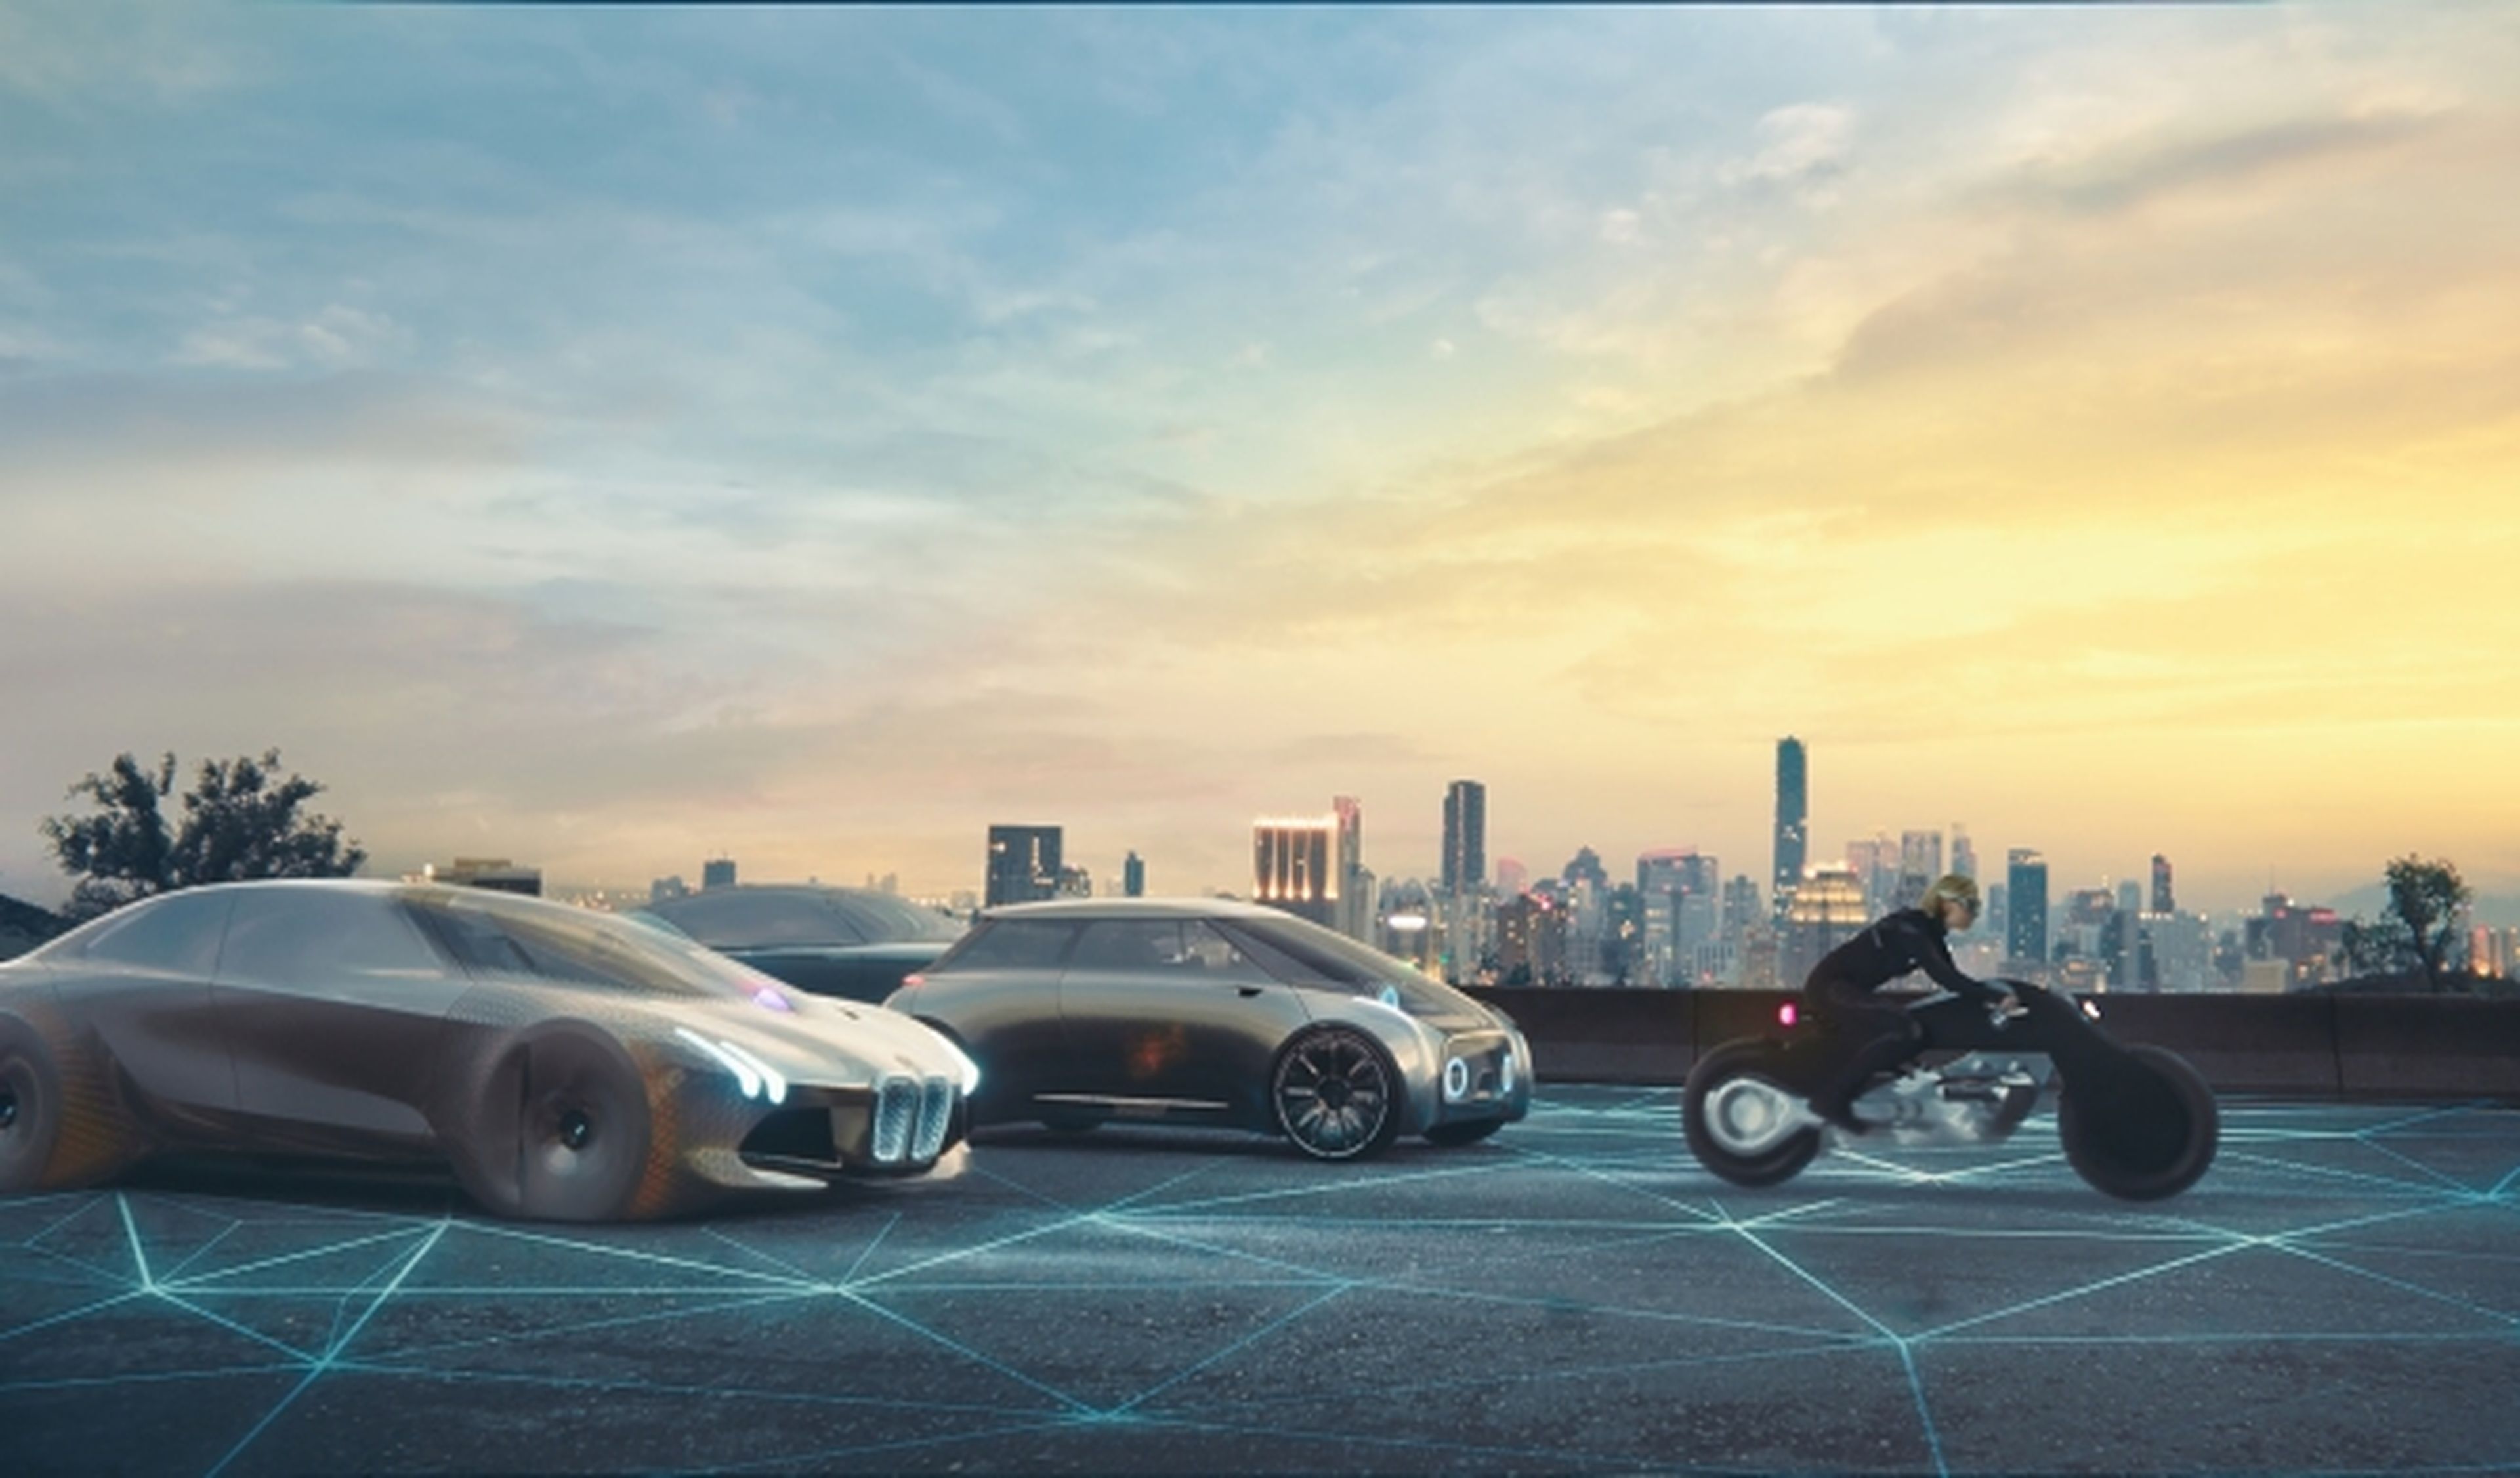 Vídeo: A New Era, la visión de BMW de los próximos 100 años